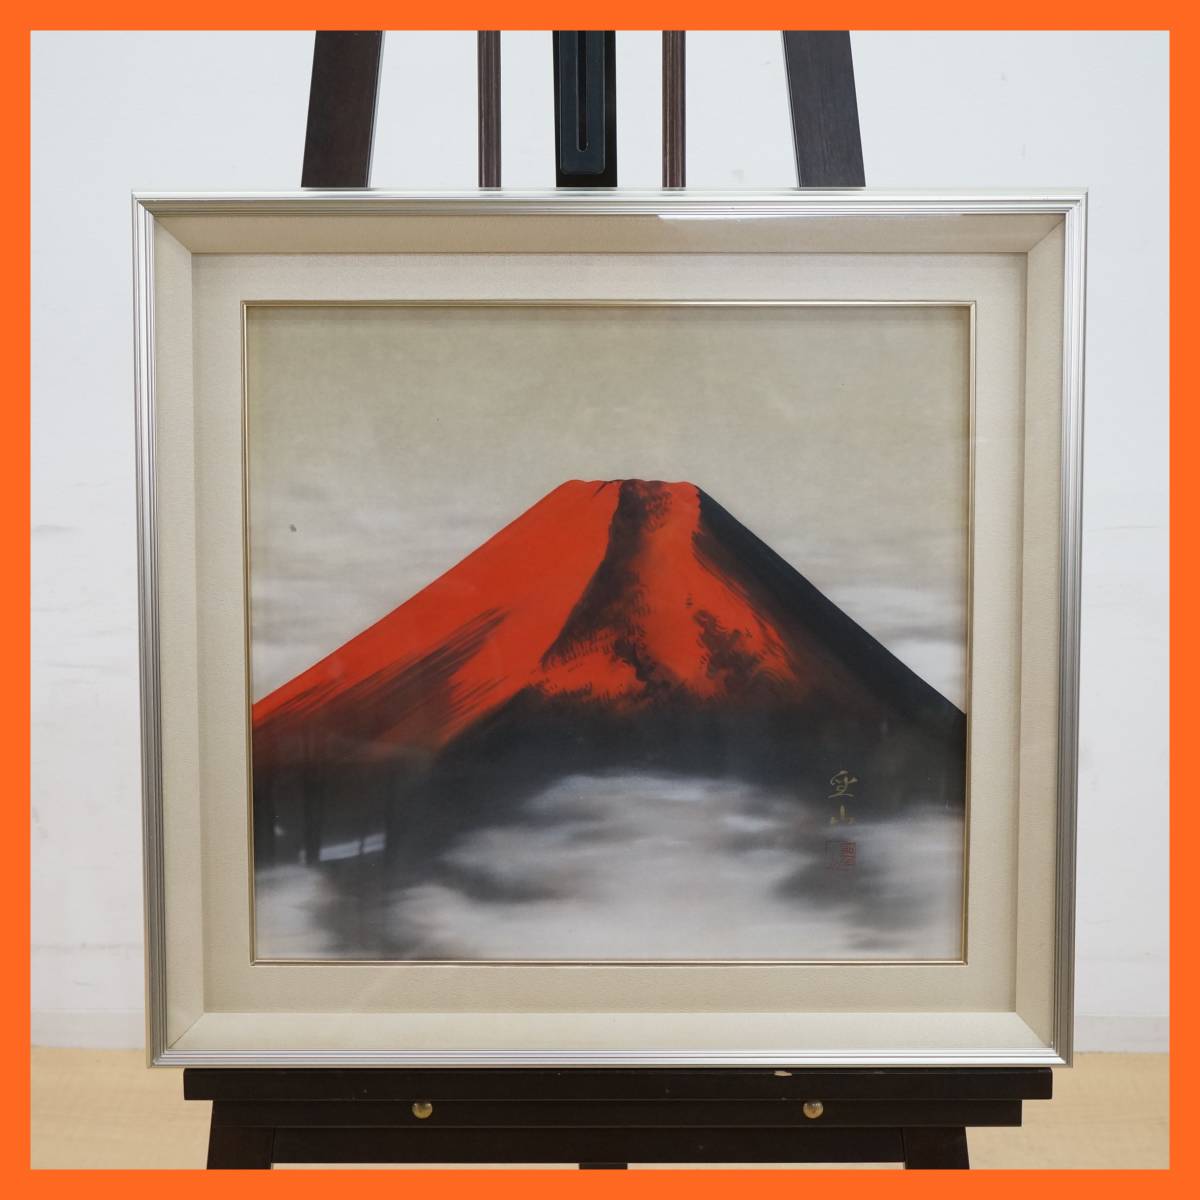 东羽：[日本画]西冈青山的真迹画红富士富士山画框尺寸约。 64.1 cm x 60.3 cm 艺术品 带框吉祥图 室内装饰 ★免运费★, 绘画, 日本画, 其他的